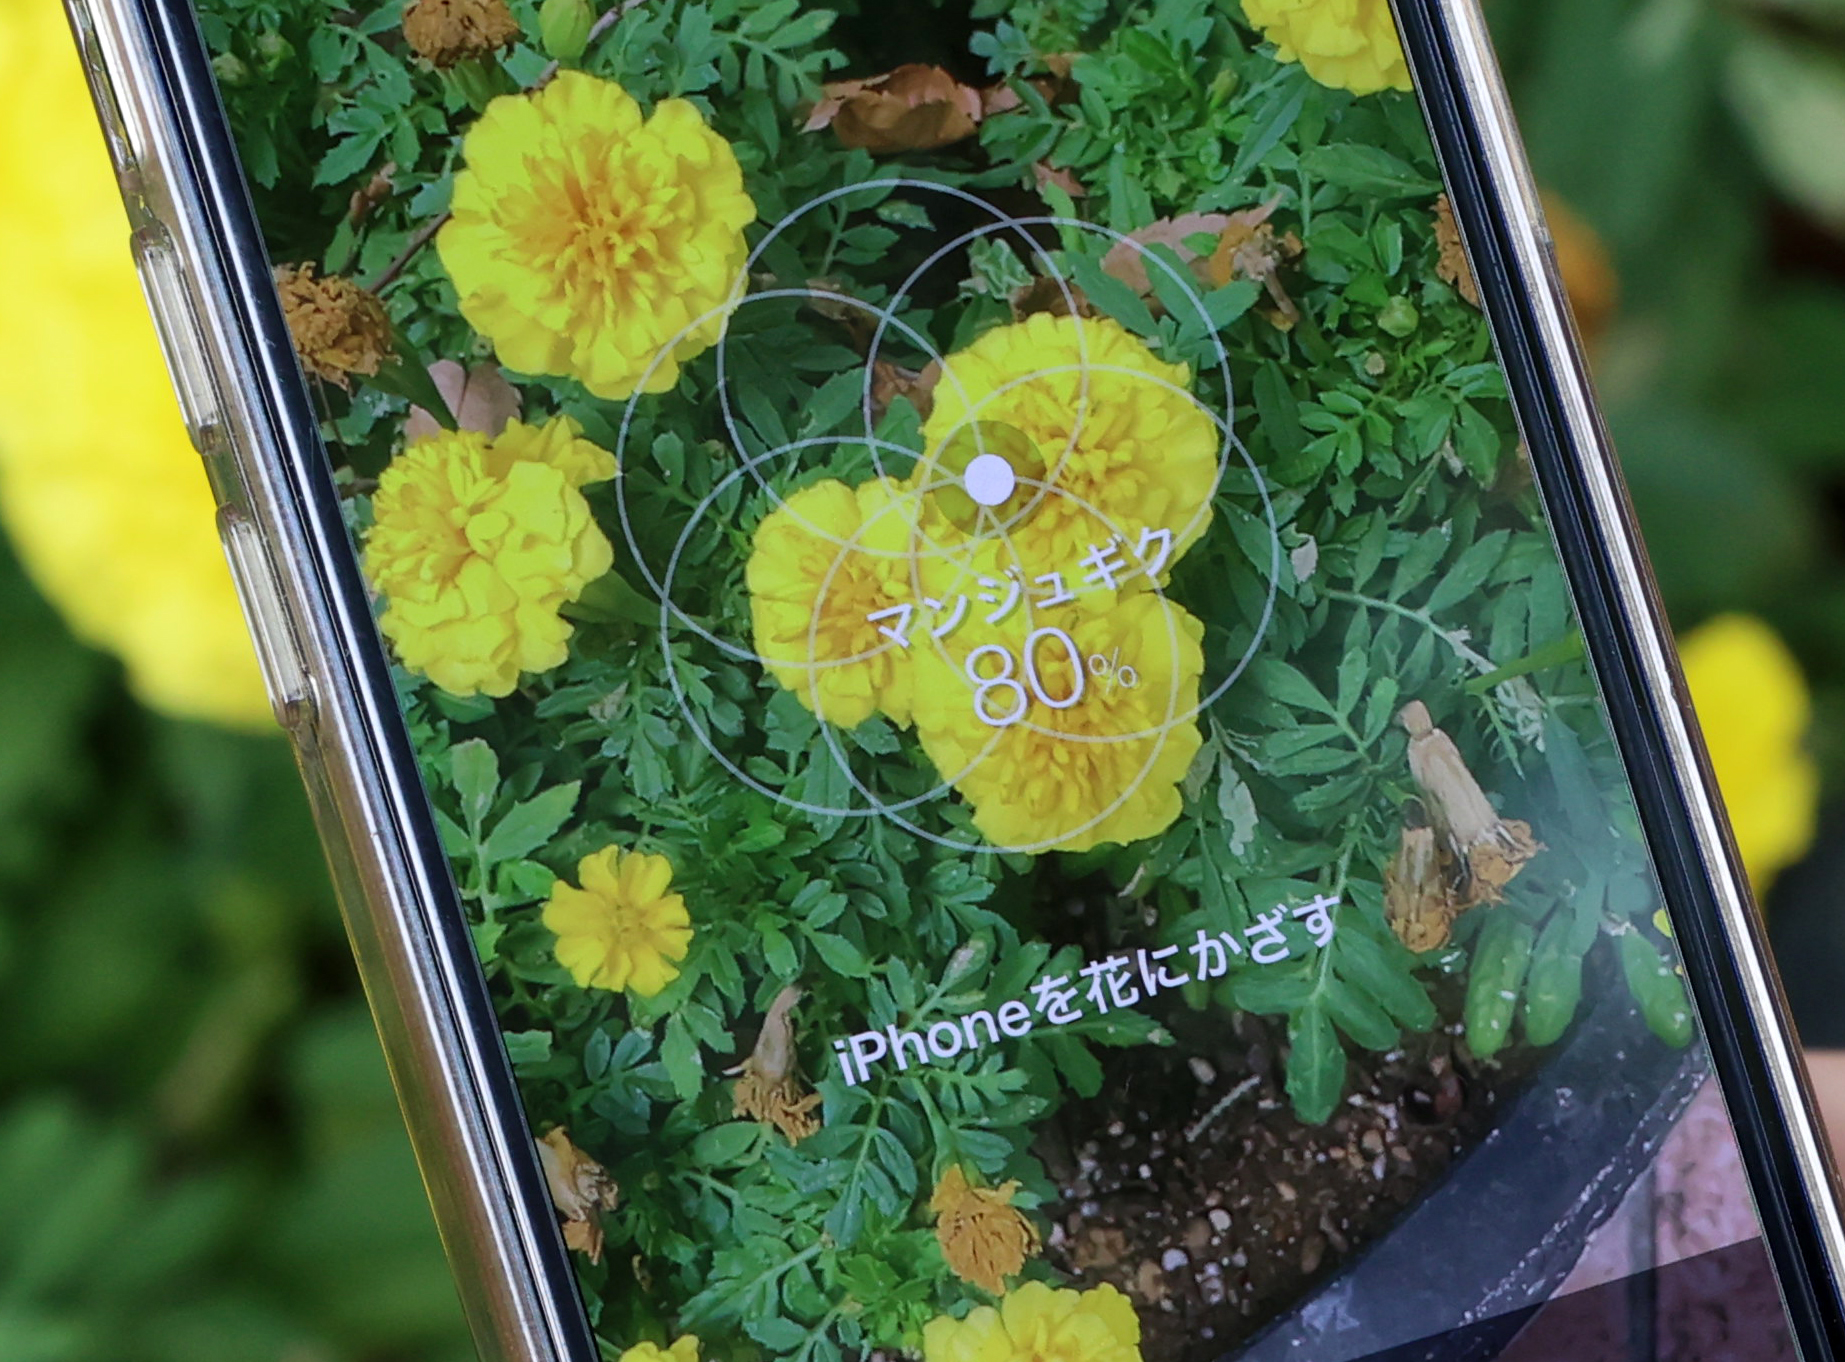 スマホかざすだけで花の名前がわかる千葉工大開発のアプリ ハナノナ が人気 自宅周辺で知的体験 散歩が楽しくなった Sponsored 産経ニュース